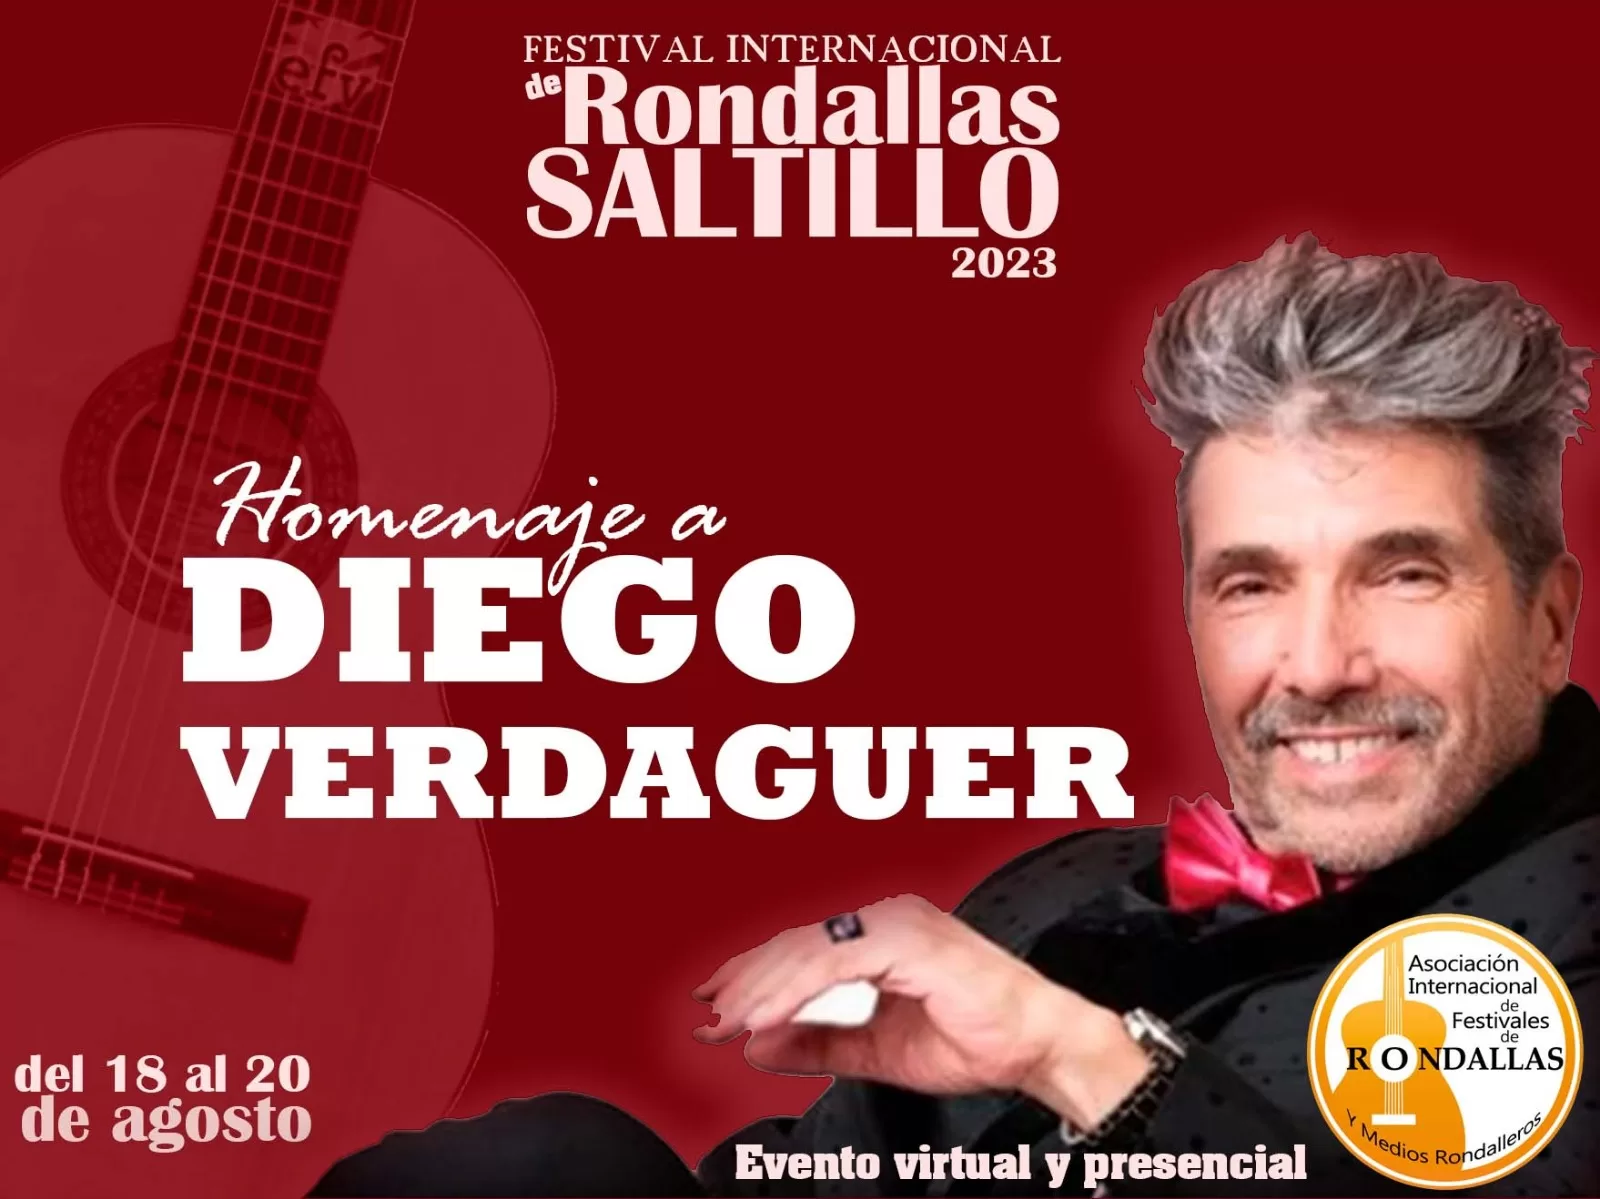 Cartel del homenaje a Diego Verdaguer en el Festival Internacional de Rondallas